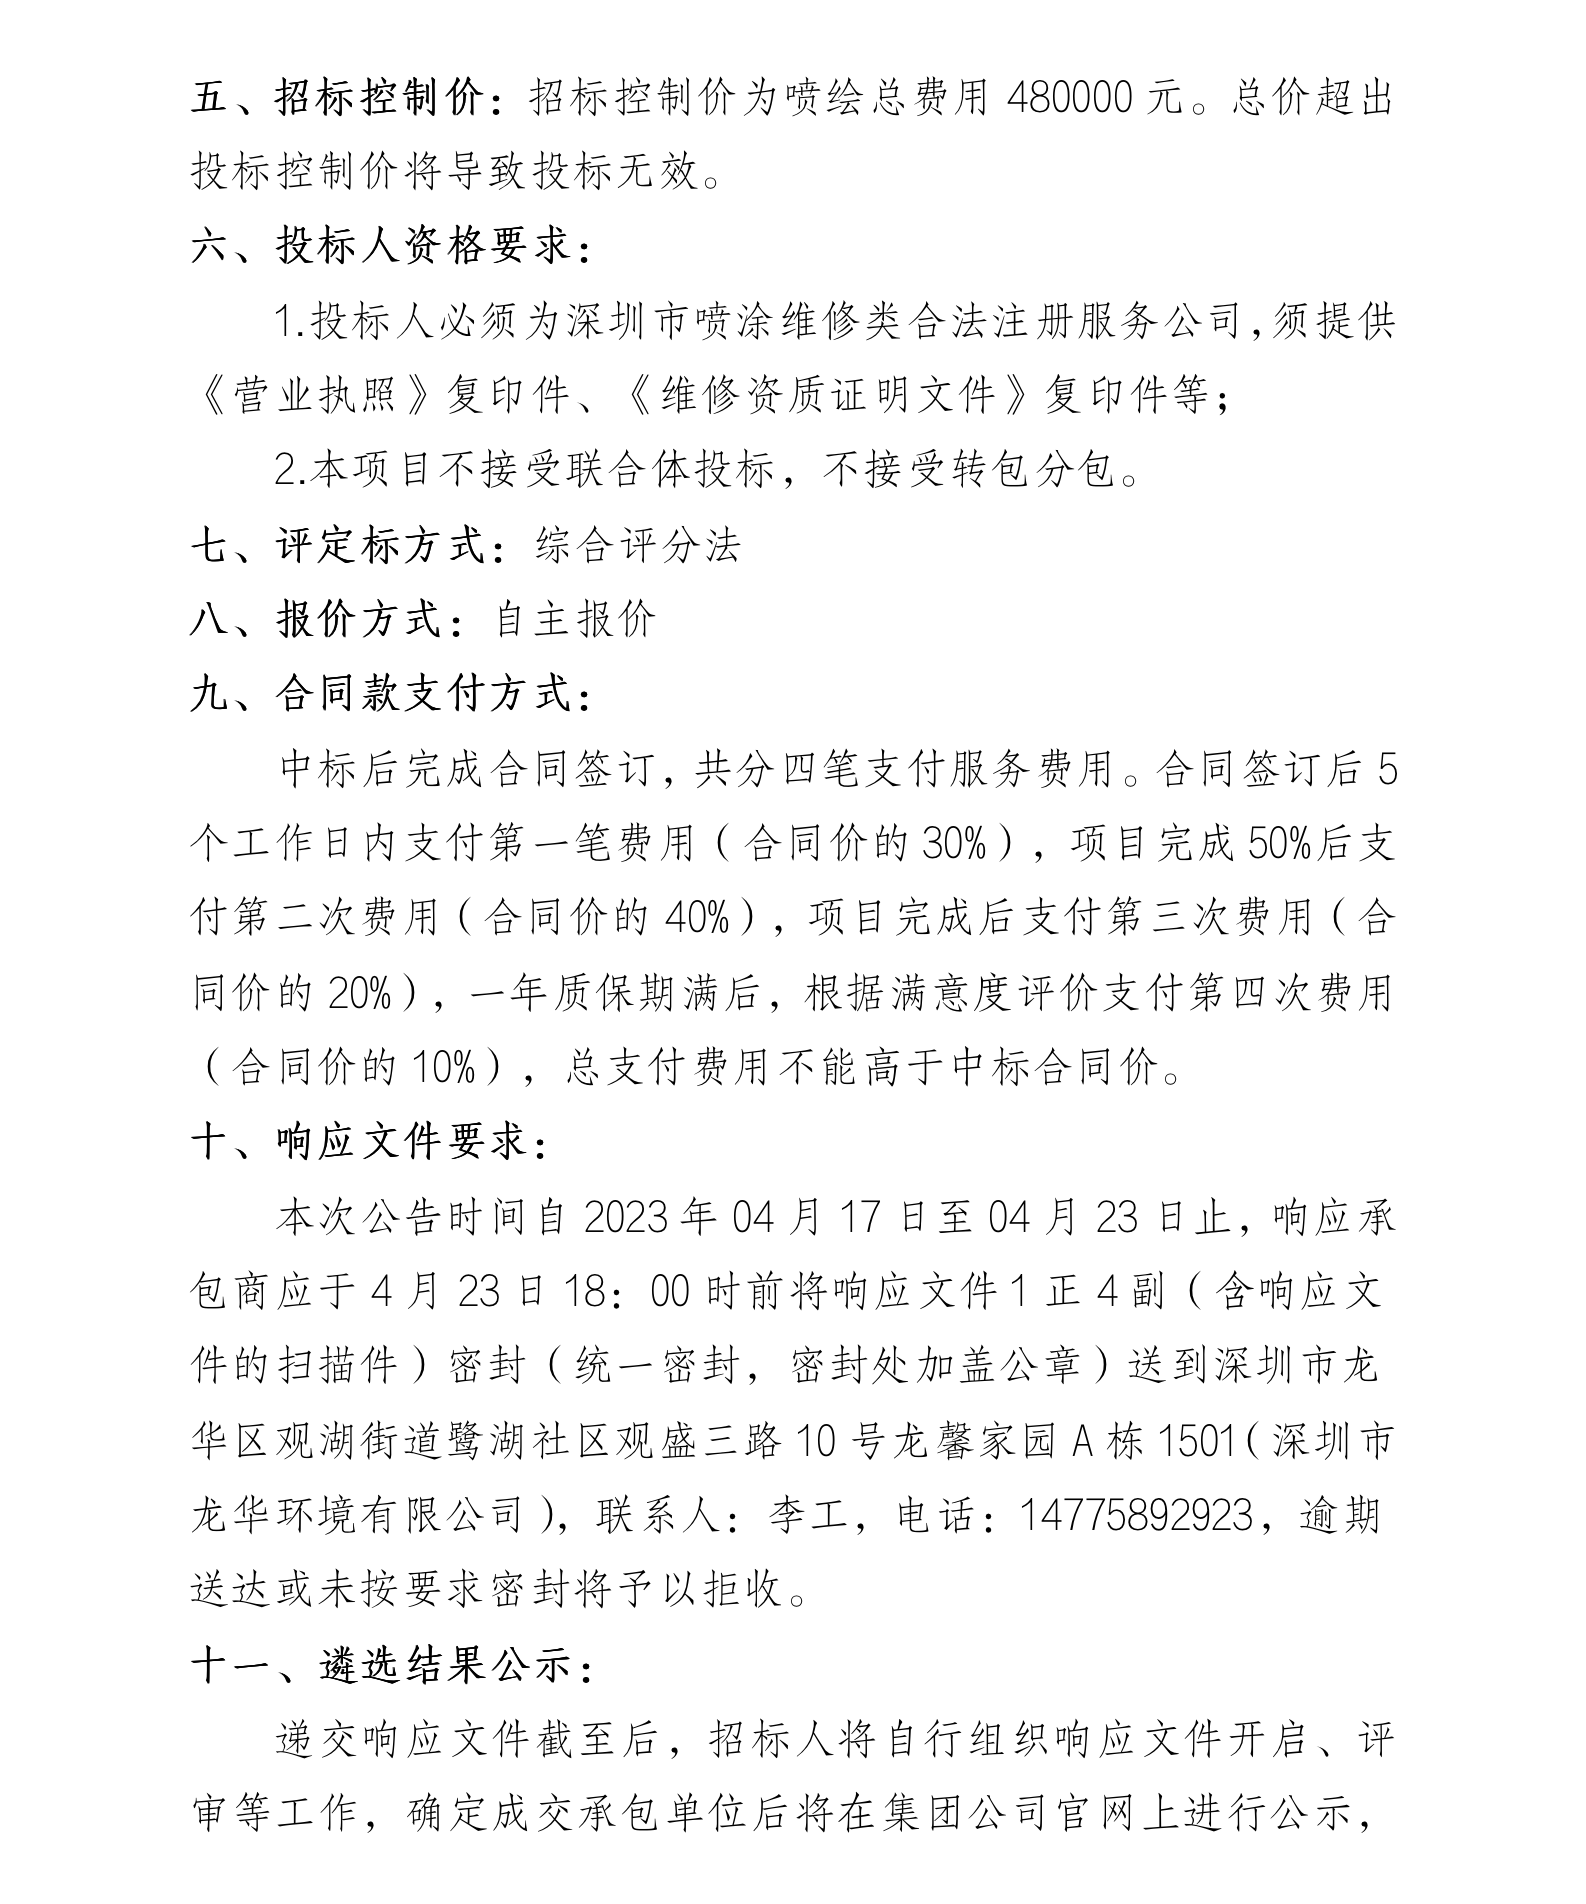 深圳市环境有限公司 勾臂车、压缩箱喷绘服务商遴选的公告